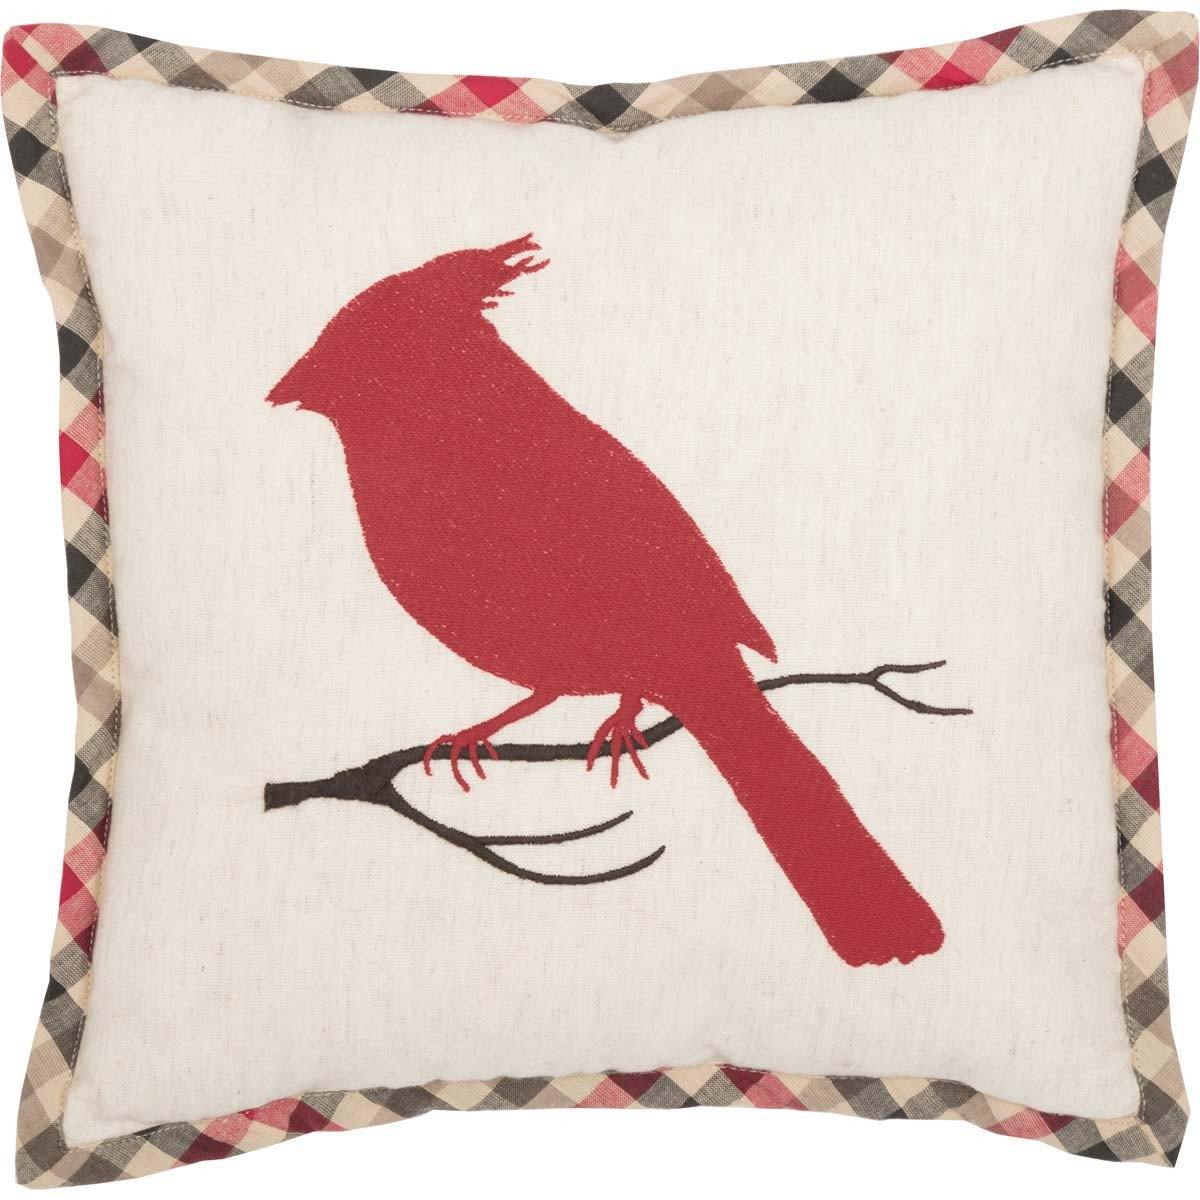 Hollis Cardinal Pillow 12"x12" - The Fox Decor